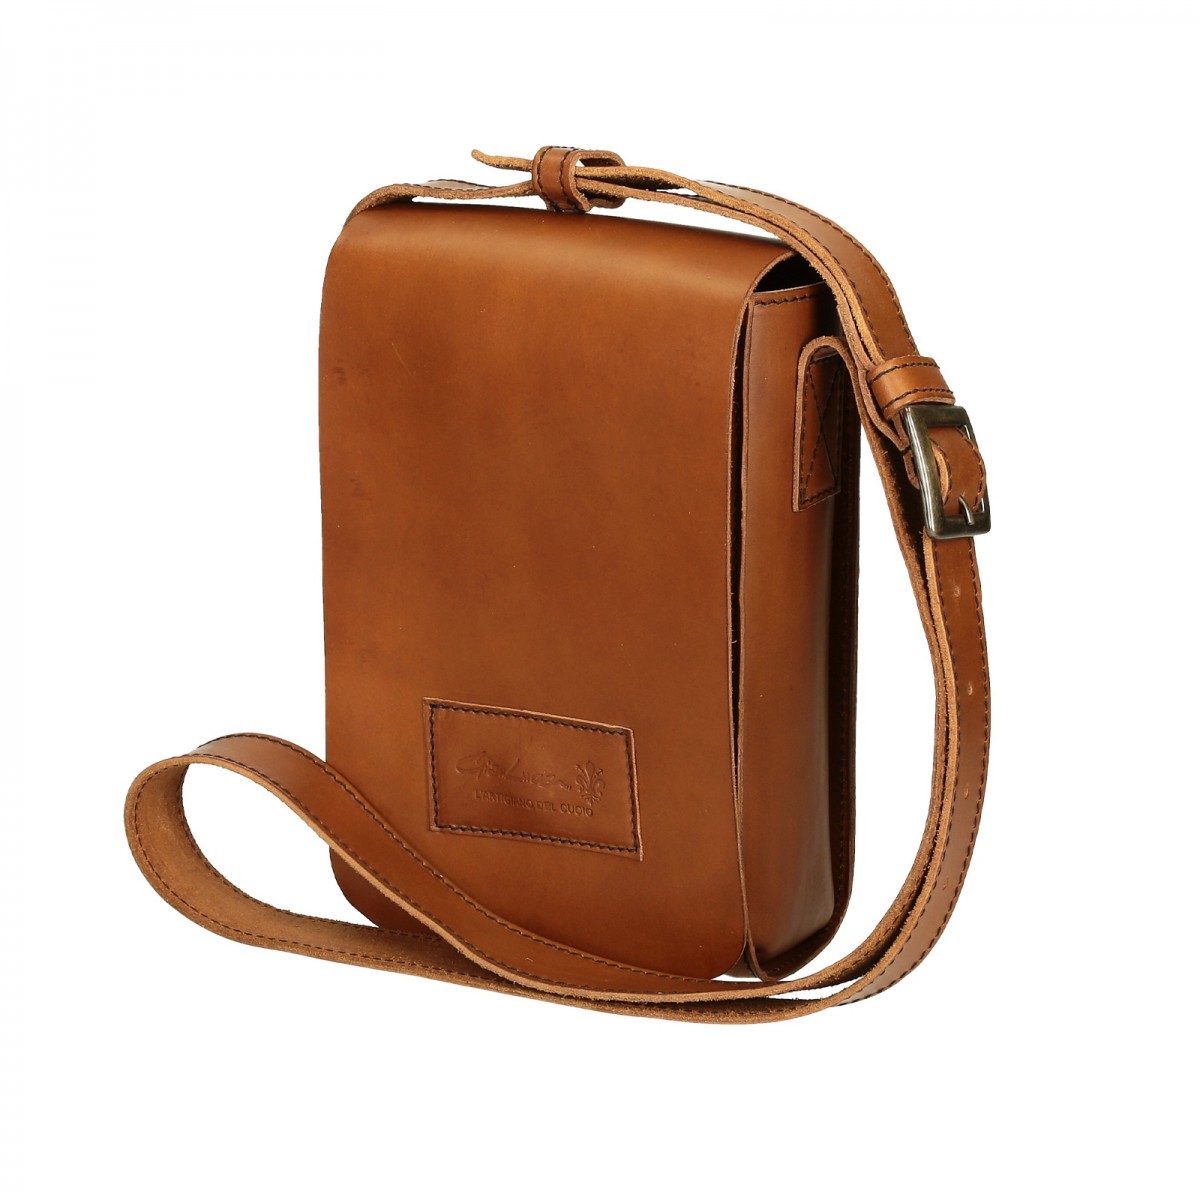 Natural leather shoulder bag long strap Handmade | Gianluca - The ...